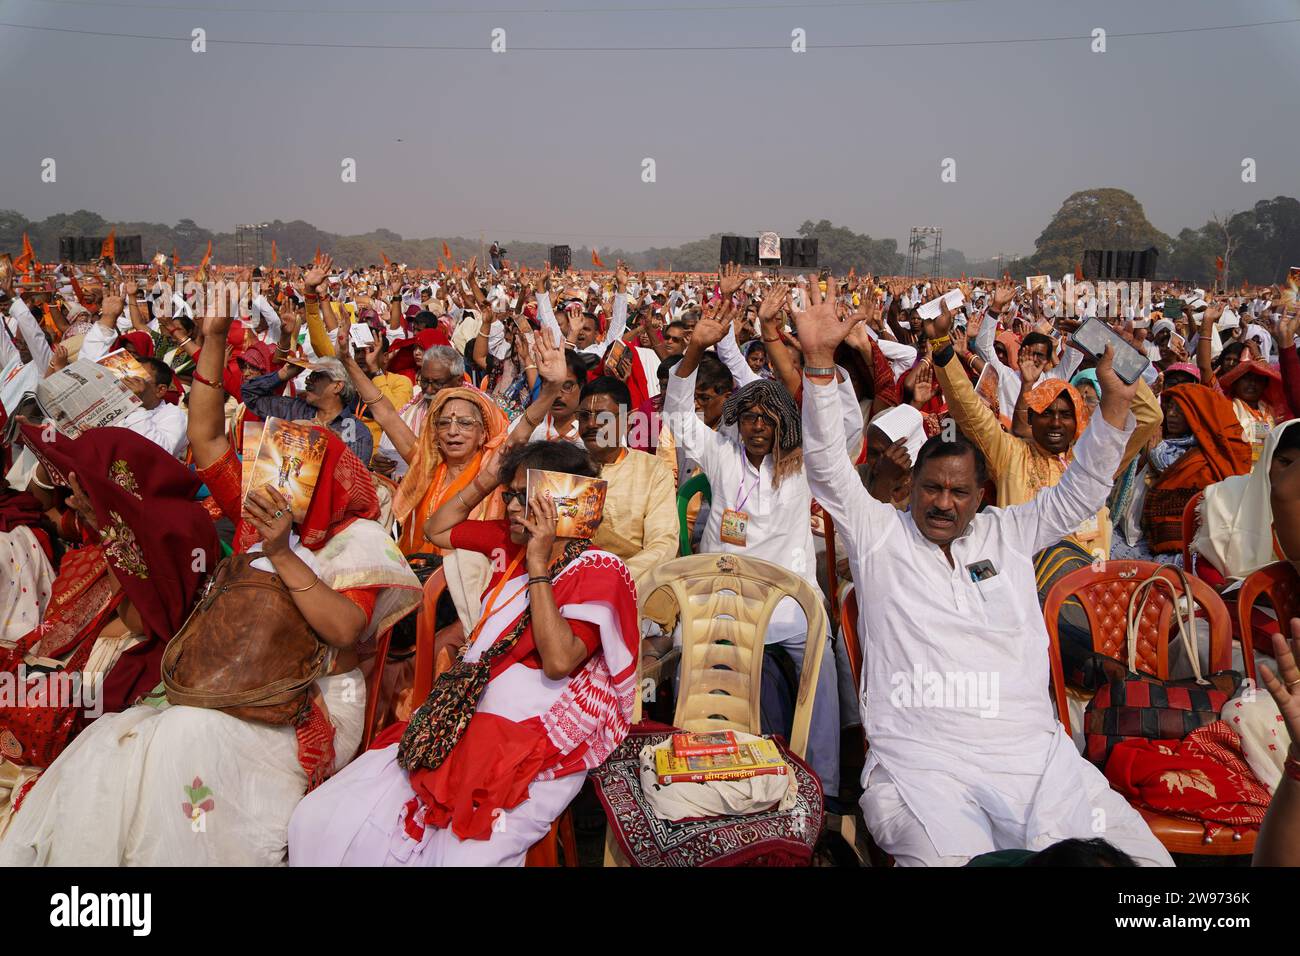 In einem Wahrzeichen der Einheit und Hingabe fand heute der Lokkho Kanthe Gita-Pfad statt, der fast ein Lakh (100.000)-Individuen aus verschiedenen Hintergründen für eine Massenrezitation der Bhagavad Gita versammelte. Der ikonische Veranstaltungsort schwang mit dem kollektiven Gesang heiliger Verse, als Menschen aller Altersgruppen und gesellschaftlichen Gruppen, ihre traditionelle Kleidung, die unter der Dezembersonne glitzerte, sich verehrten Weisen in einem tiefen Eintauchen in die Weisheit der heiligen Schrift anschlossen. (Foto: Biswarup Ganguly/Pacific Press) Stockfoto